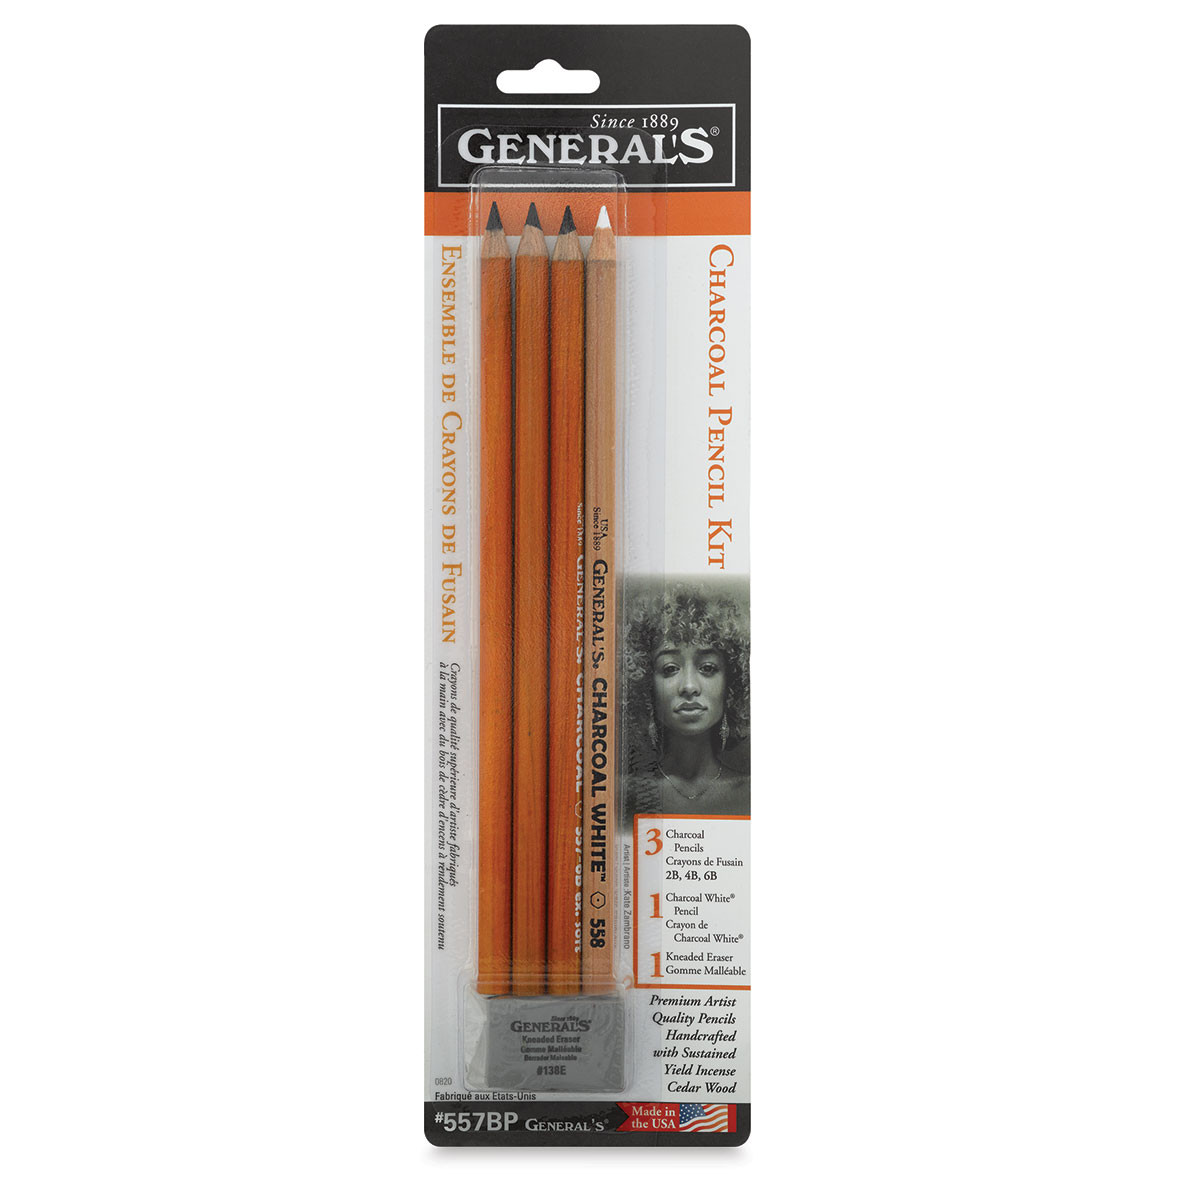 General's Charcoal Pencils - 2B Medium, 12 Pack